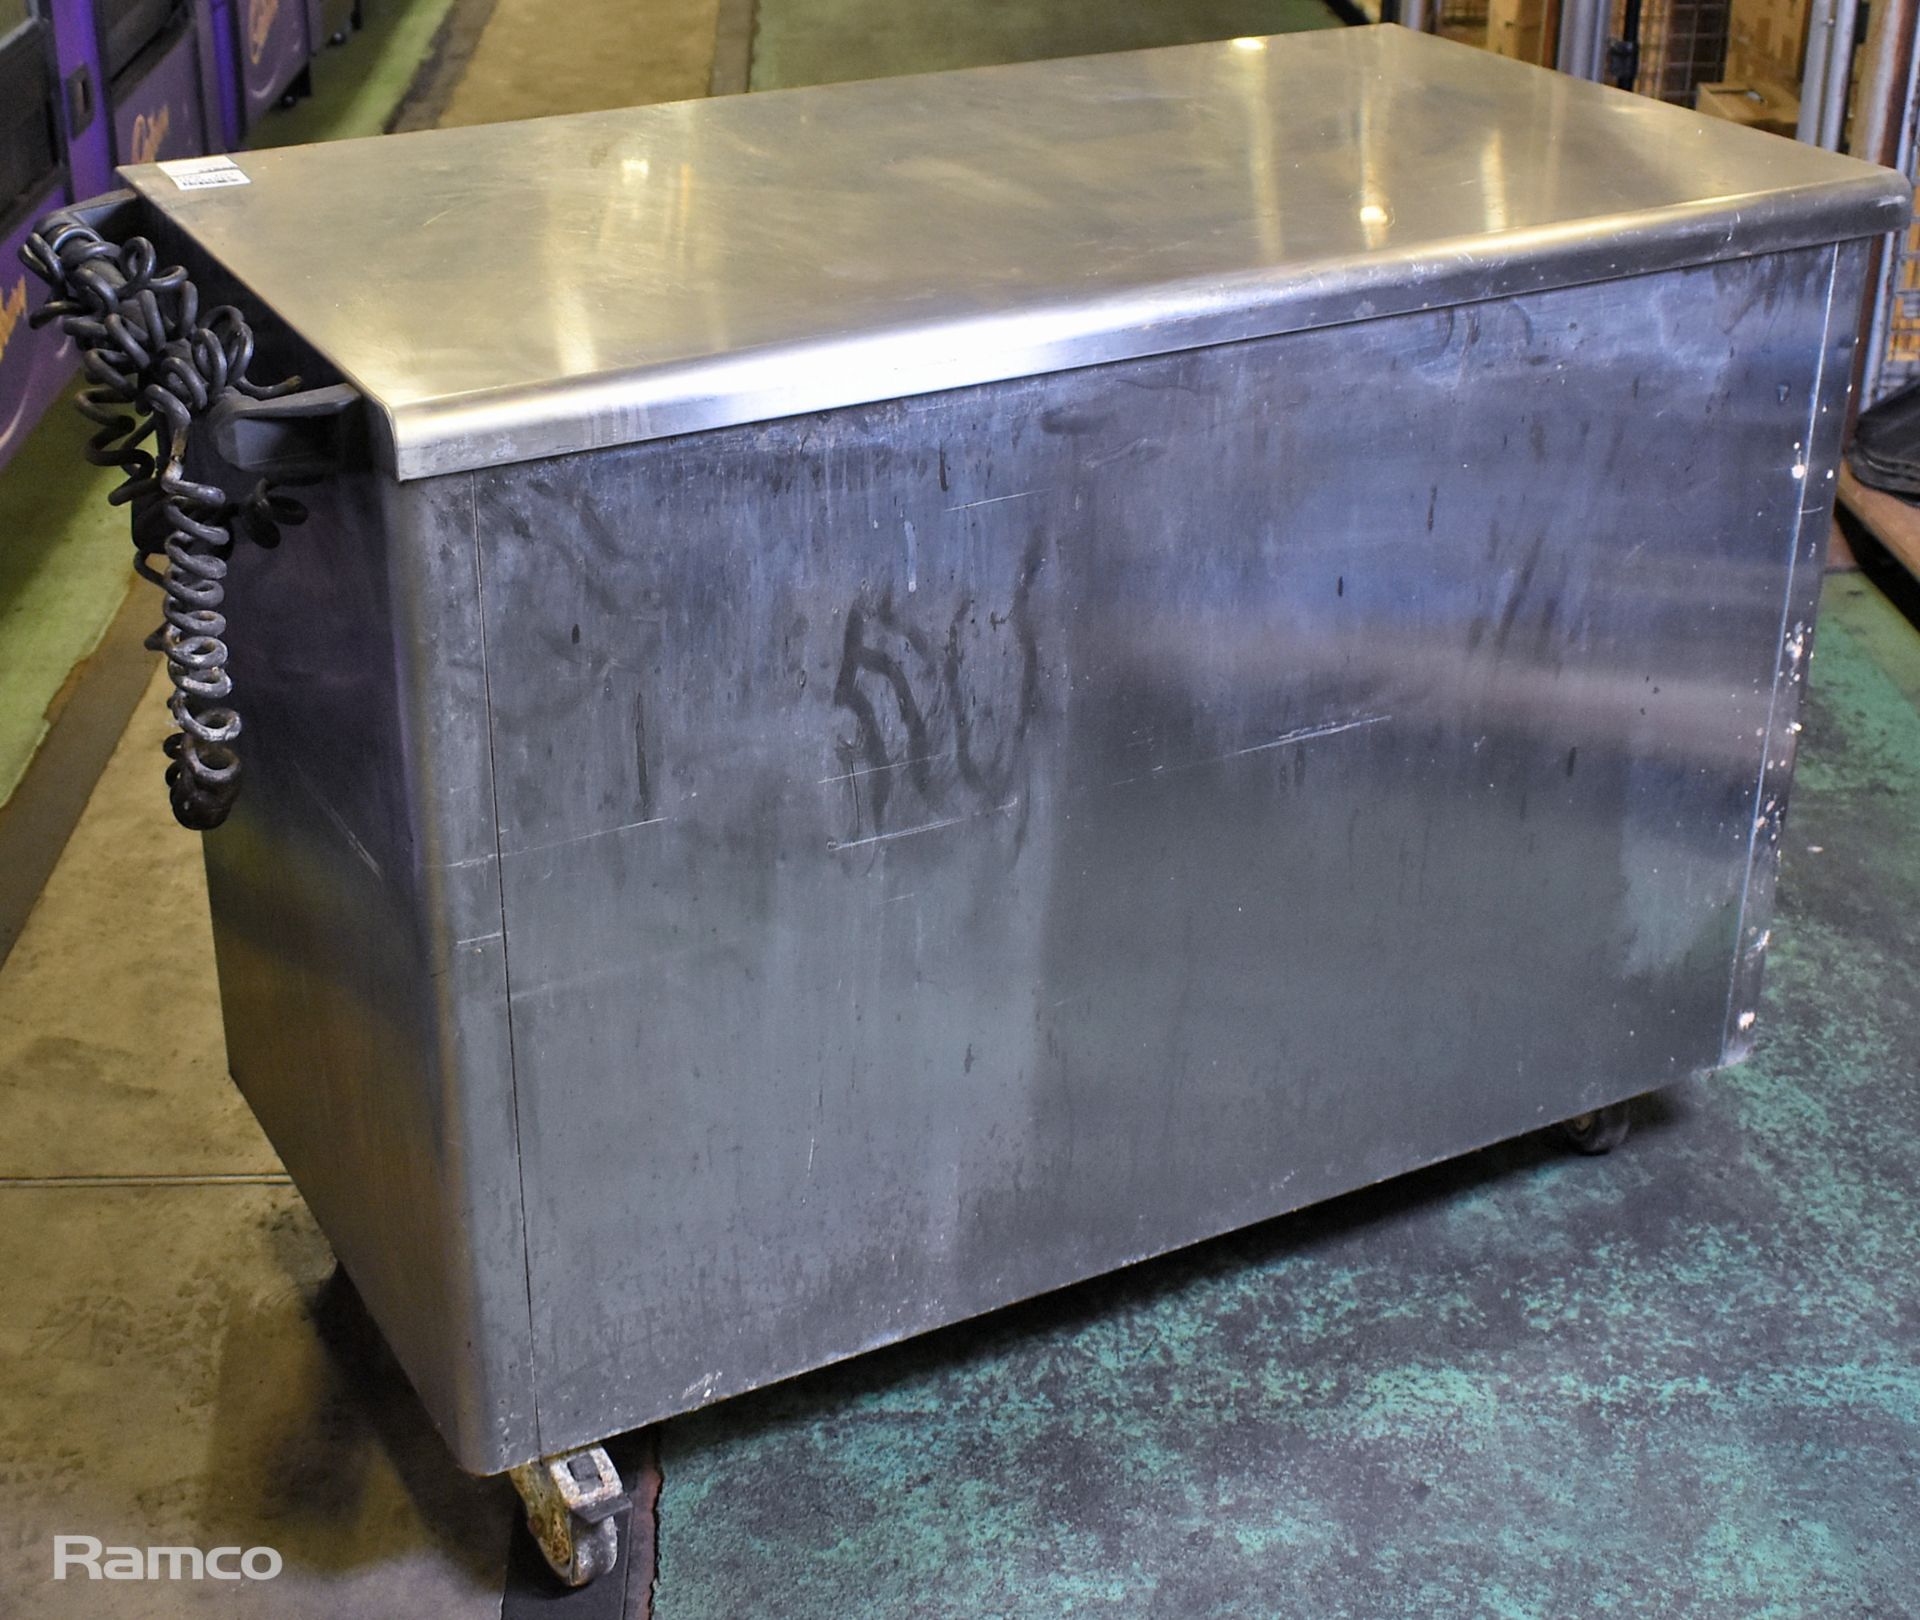 Lincat stainless steel double sliding door hot cupboard - W 1250 x D 650 x H 900mm - Image 6 of 7